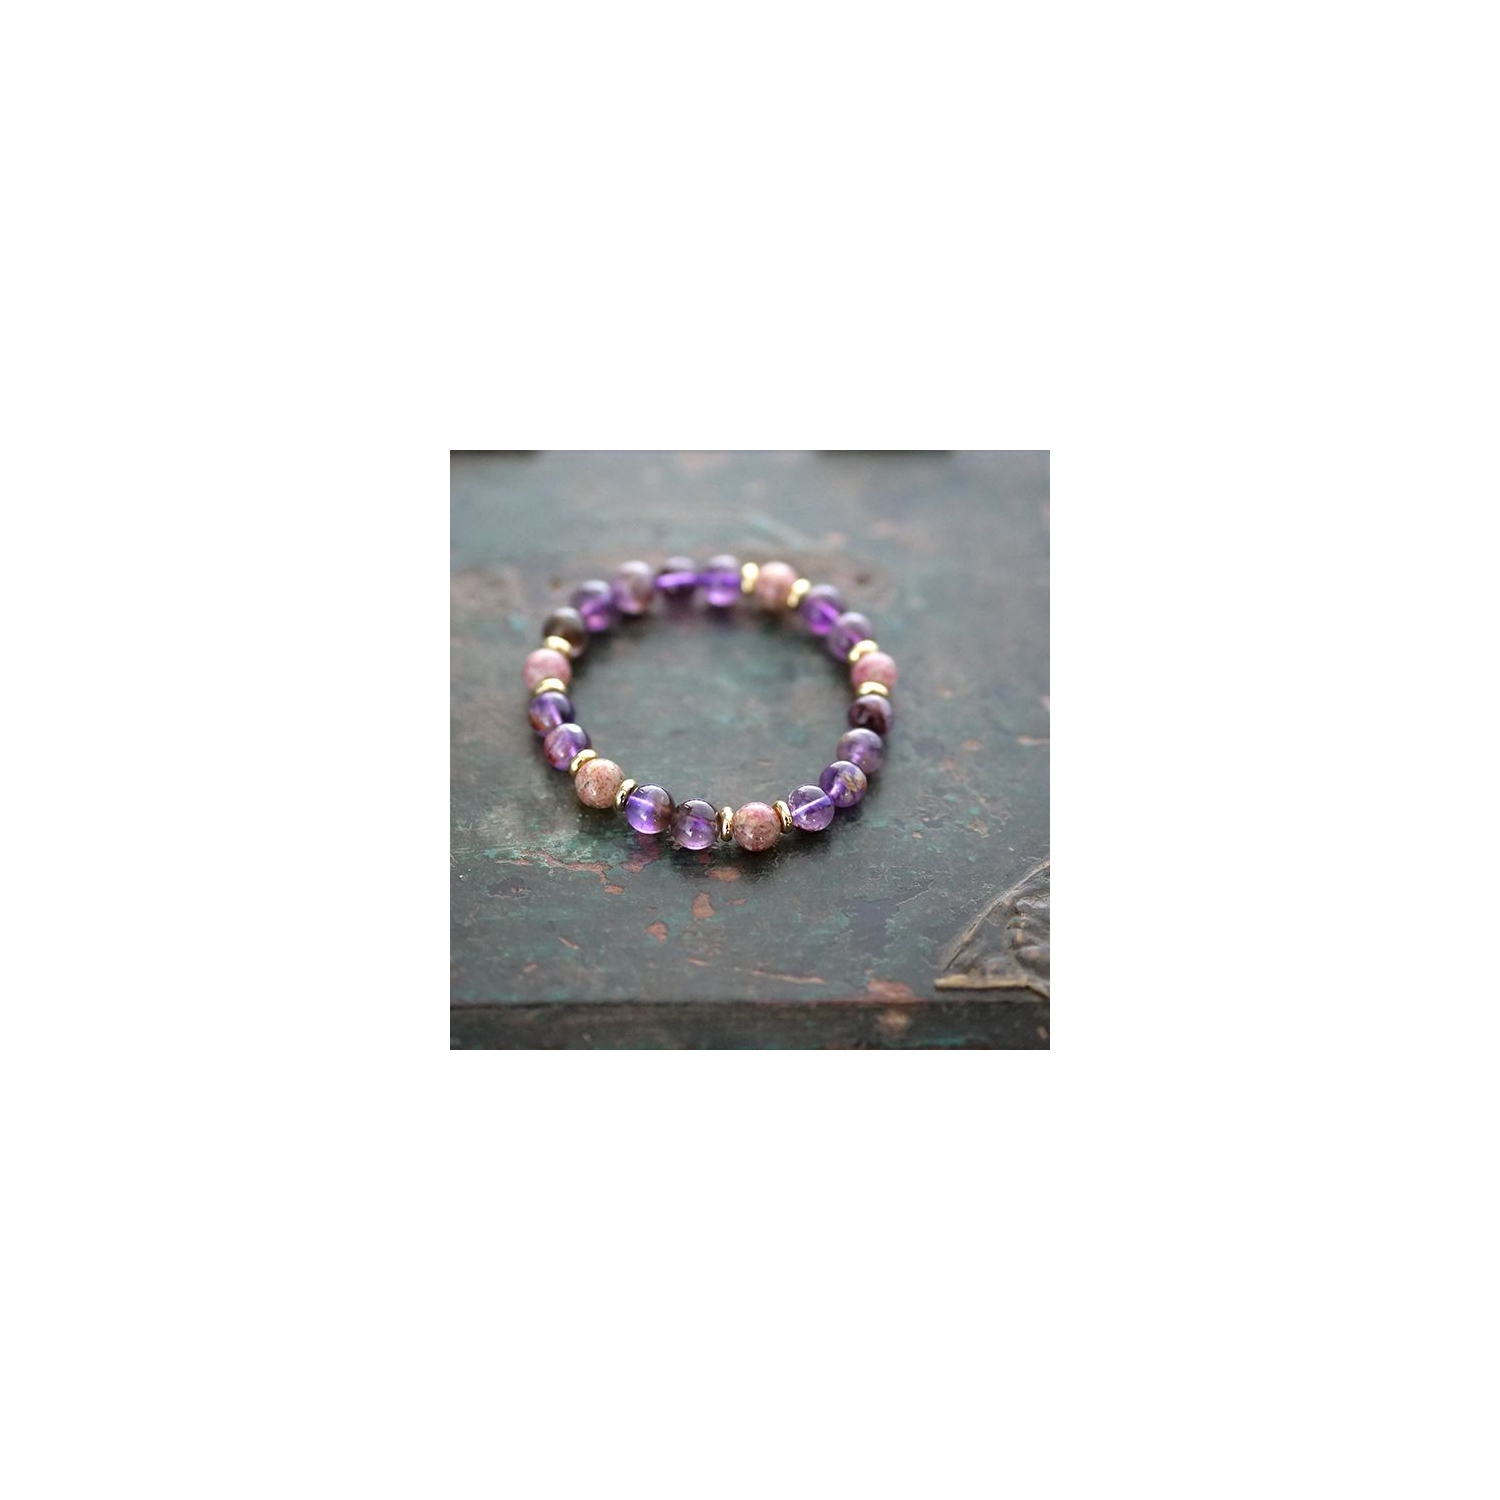 Indian super 7 beads bracelet